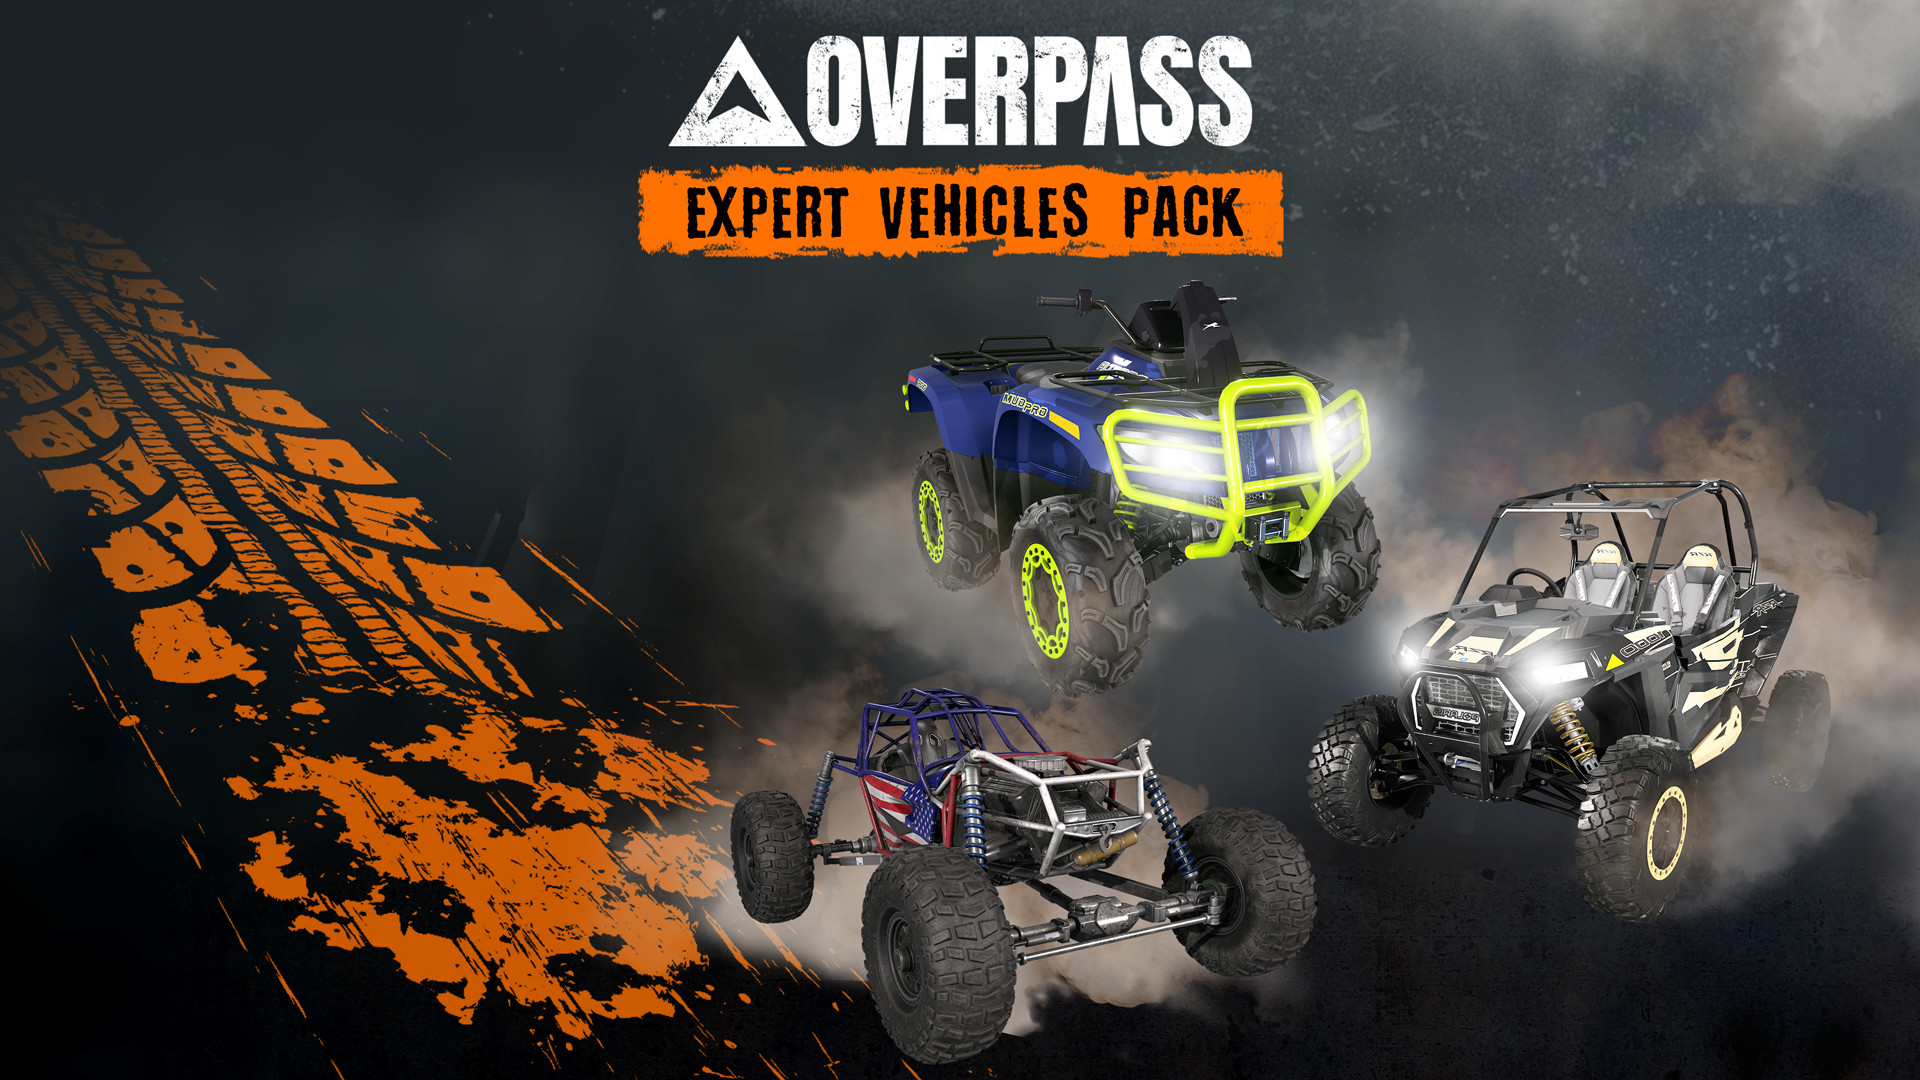 OVERPASS - Expert Vehicles Pack DLC Steam CD Key 2.36 $